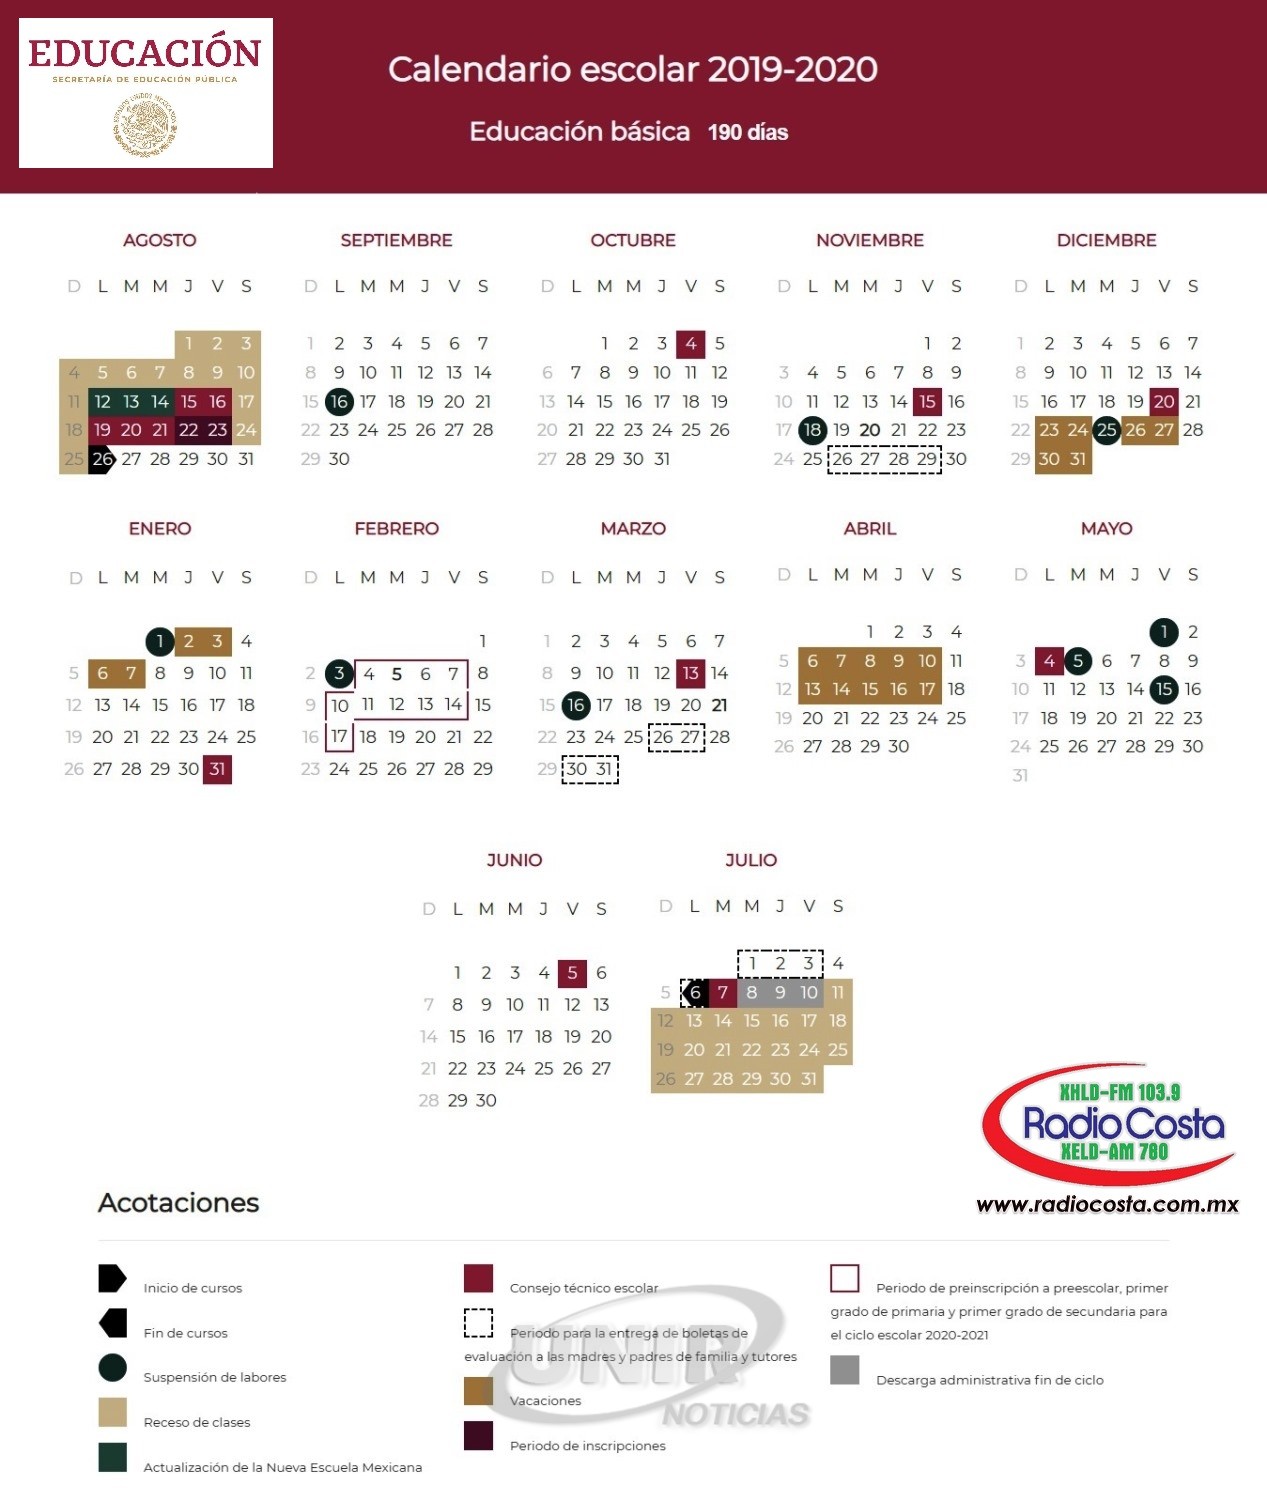 Infografia Calendario Escolar 2019 2020 Radio Costa 103.9 FM / 780 AM